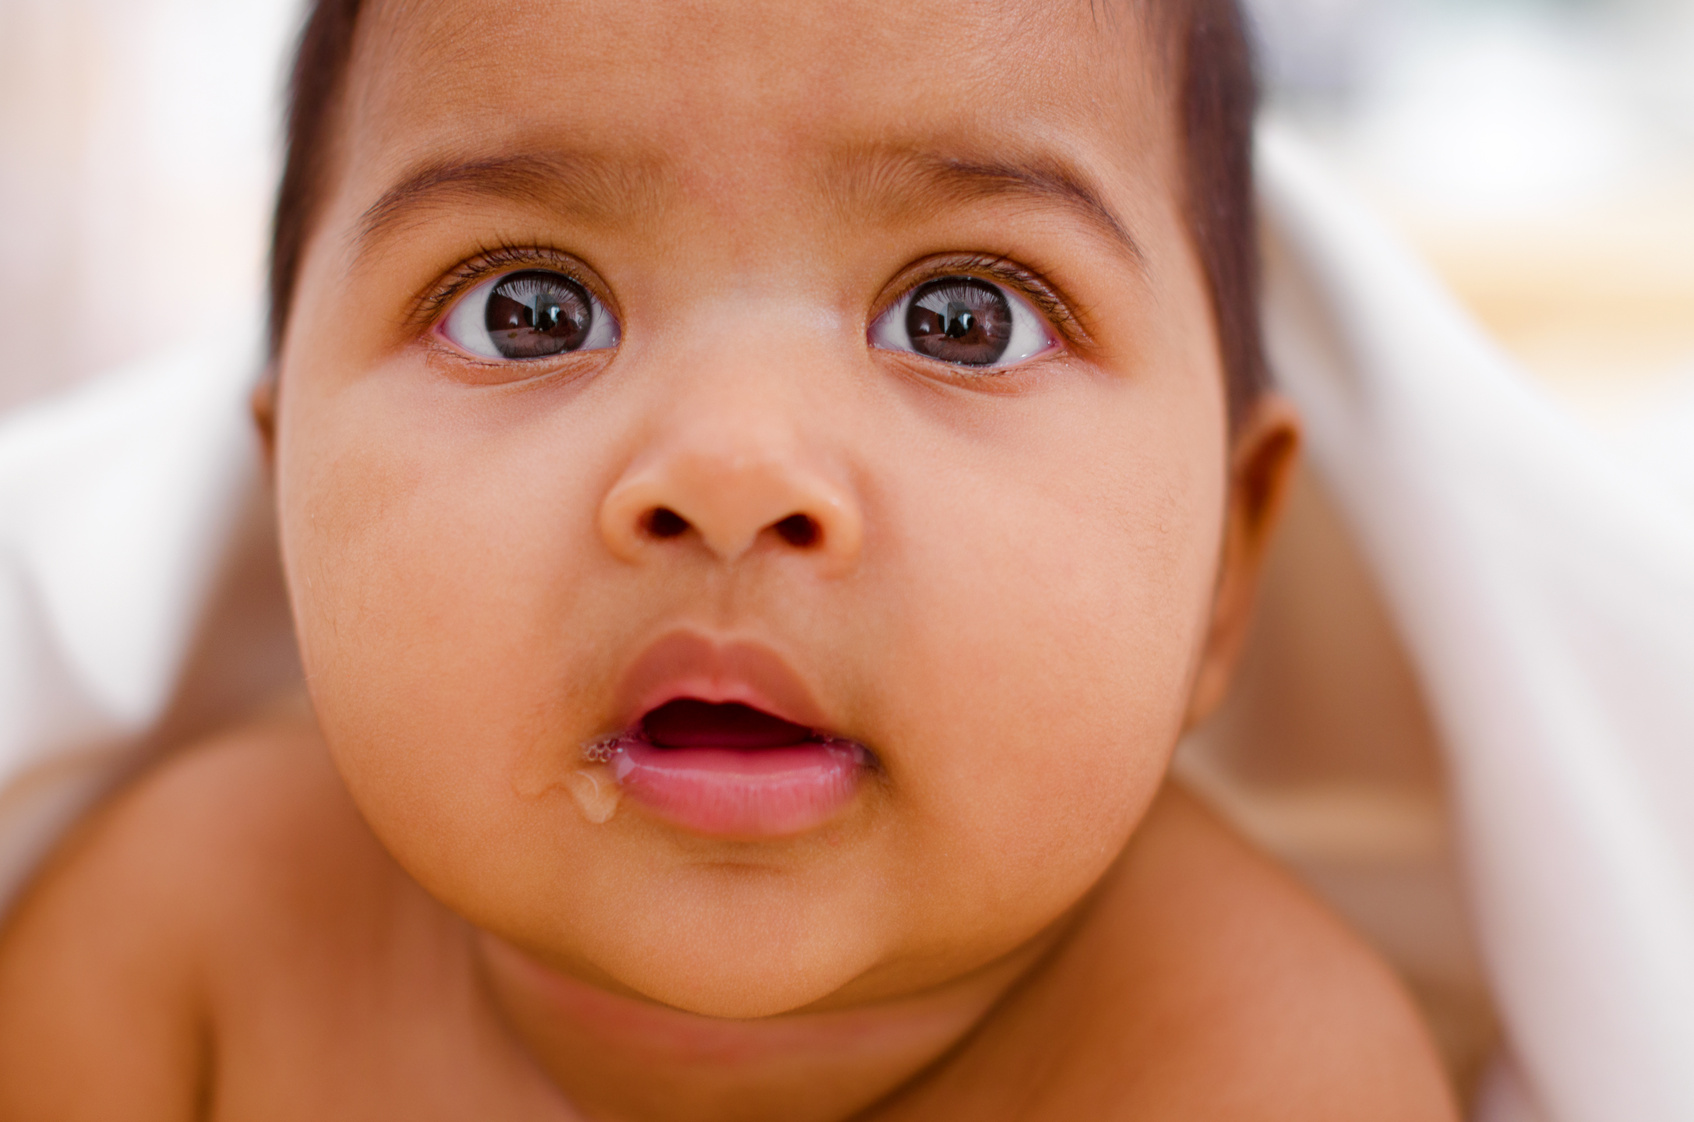 دلایل کف کردن دهان نوزاد: راهکارها و زمان مراجعه به پزشک